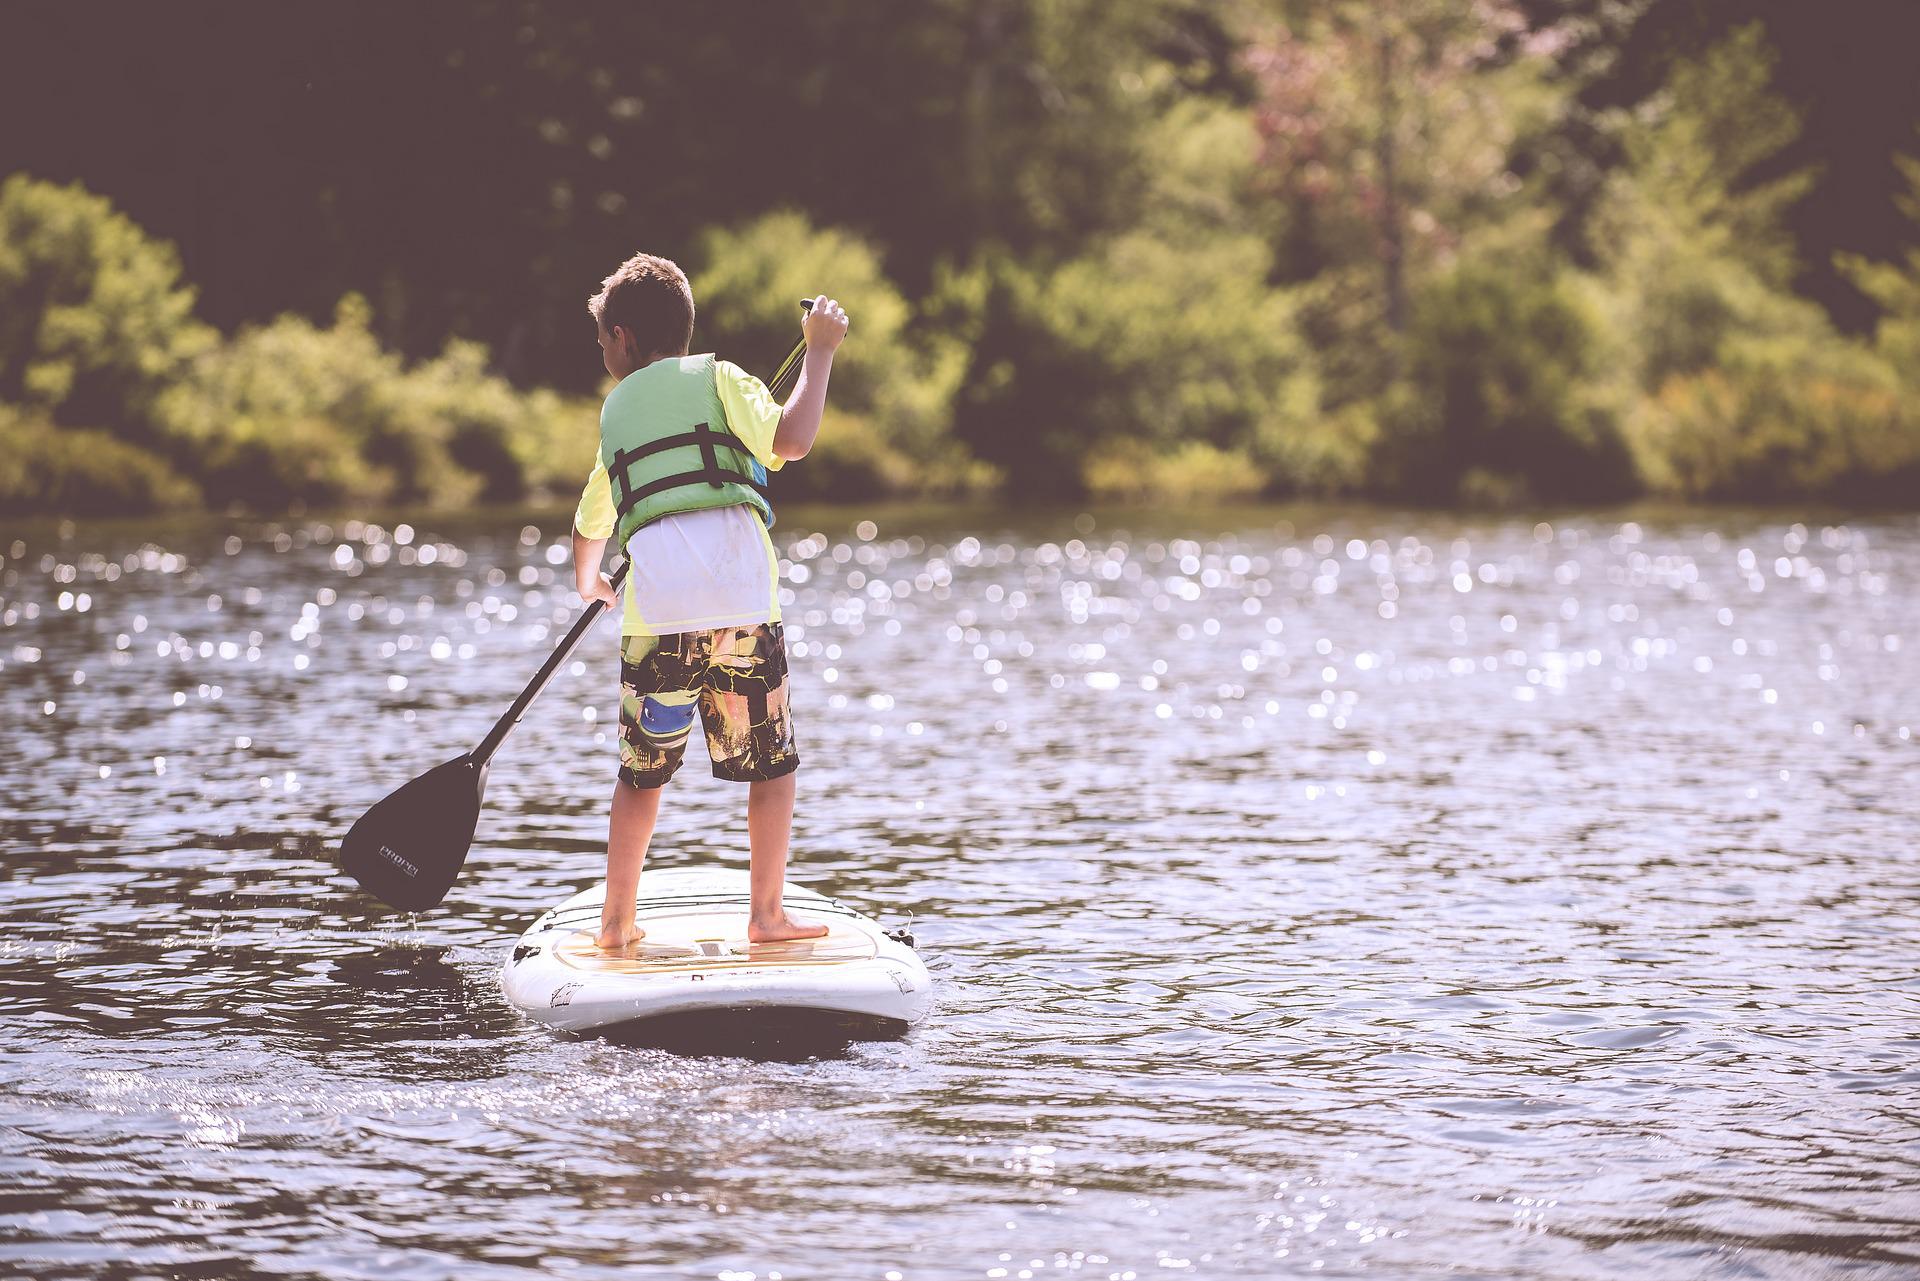 Paddleboarding zvládnou i děti/plavci. Větší bezpečí jim pak zajistí plovací vesta.